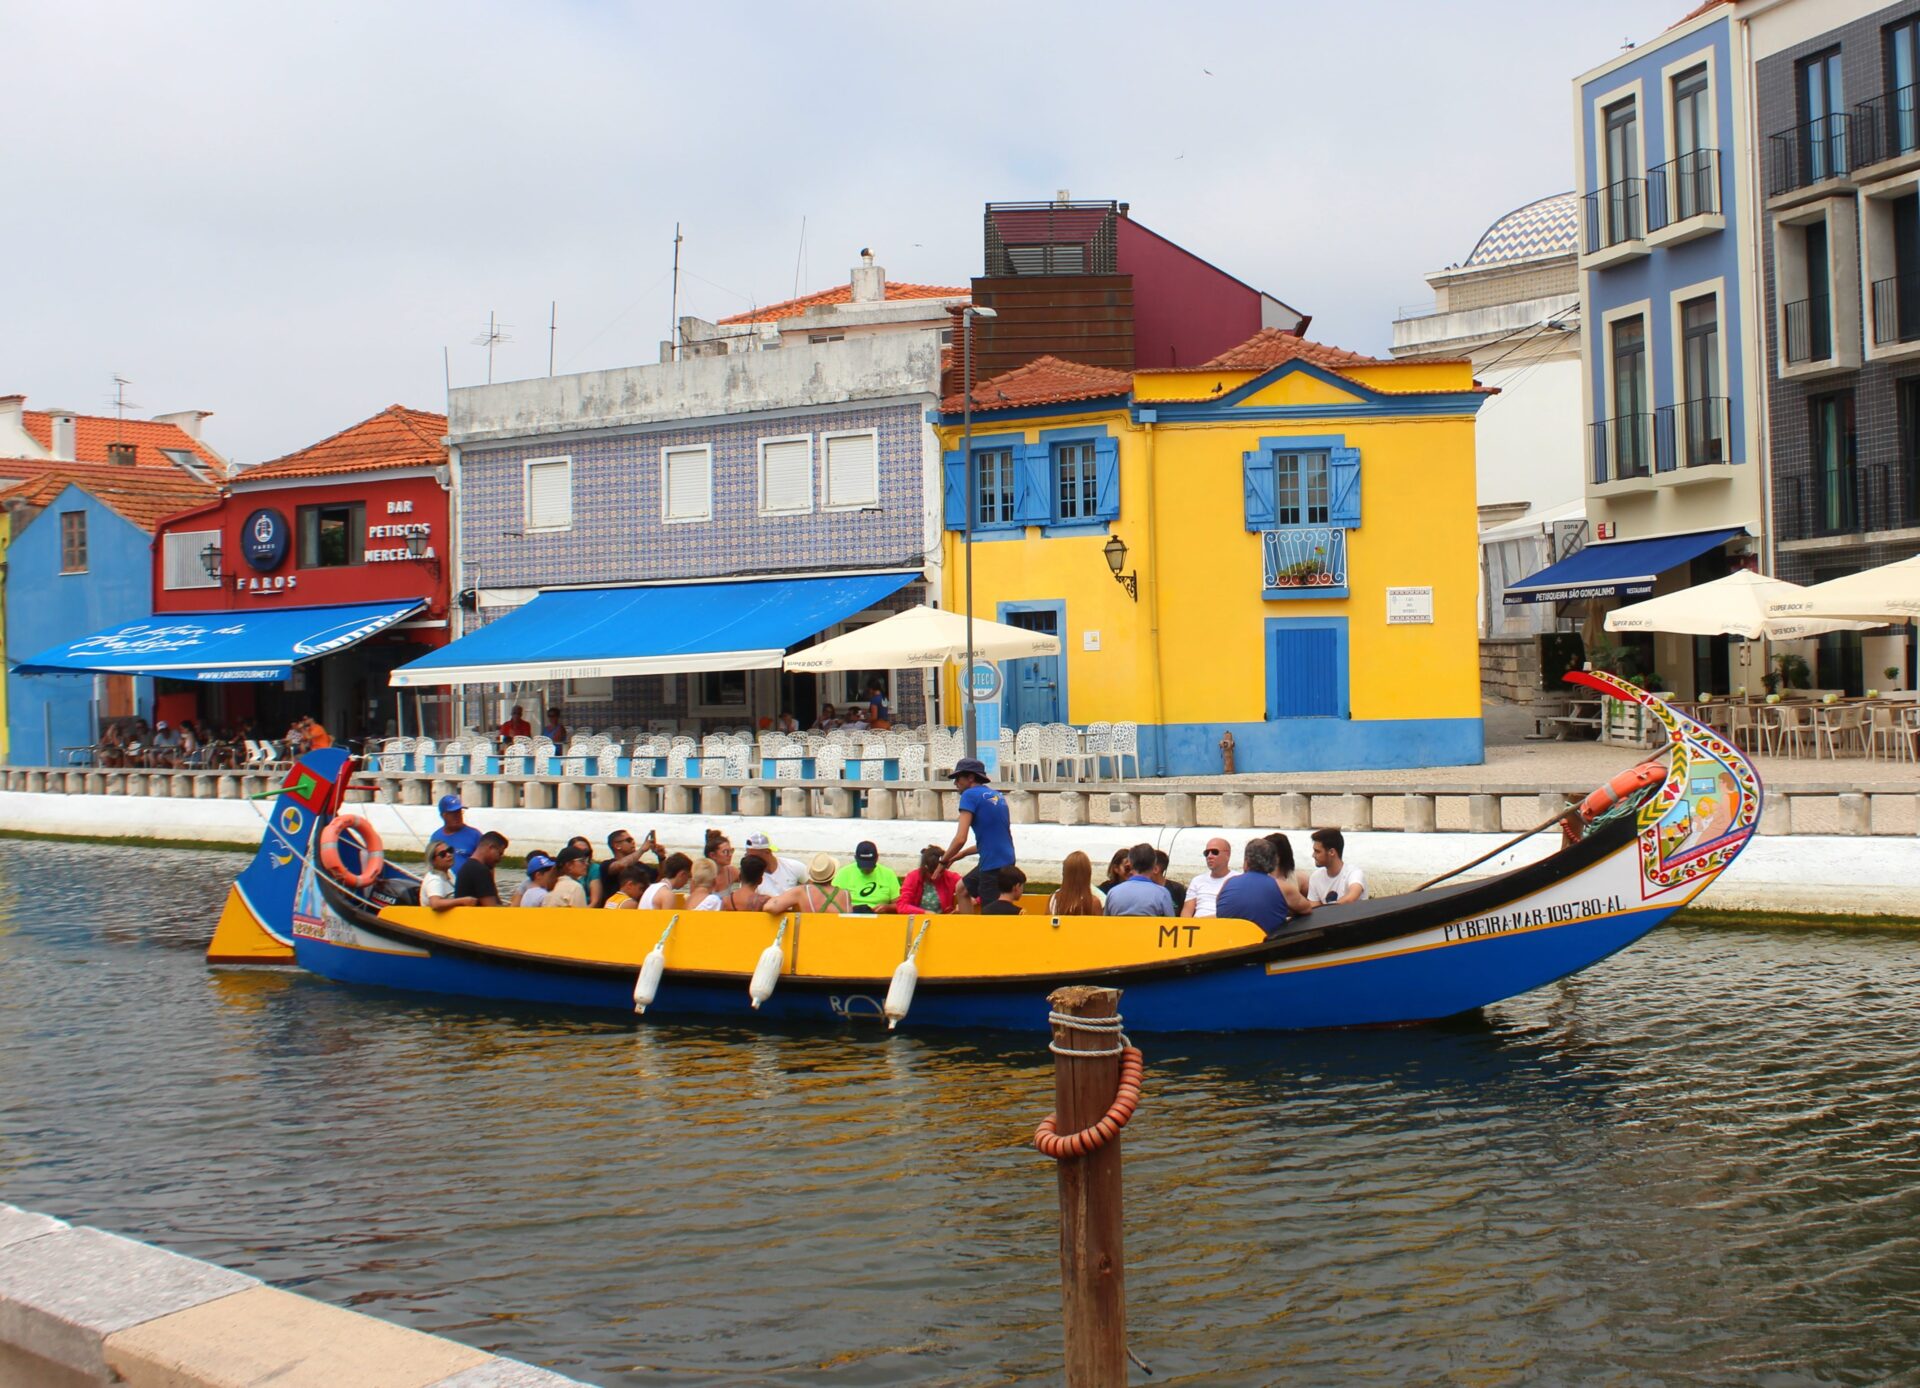 Barrio de pescadores en Aveiro con barco moliceiro